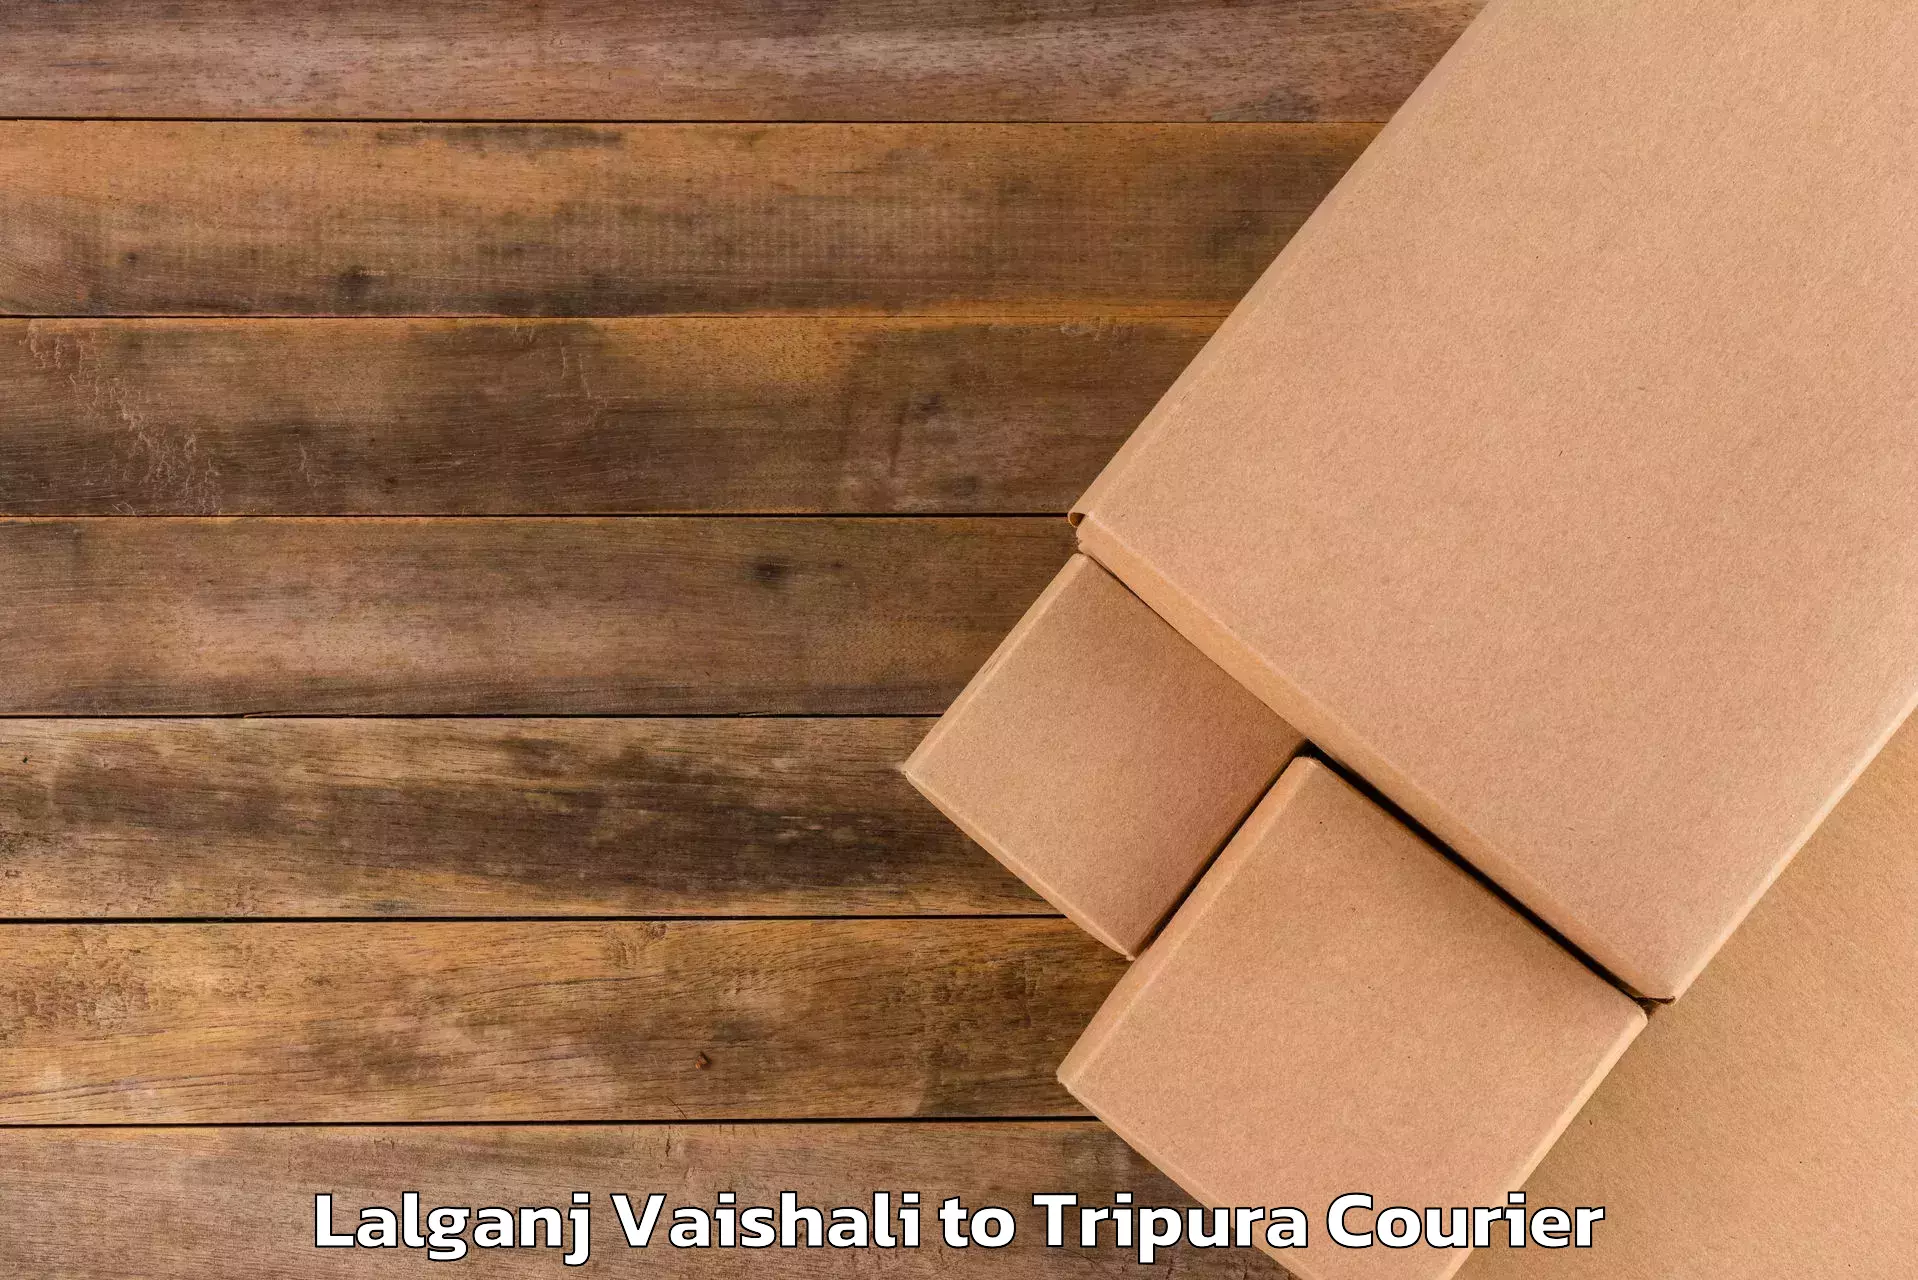 Luggage forwarding service Lalganj Vaishali to Amarpur